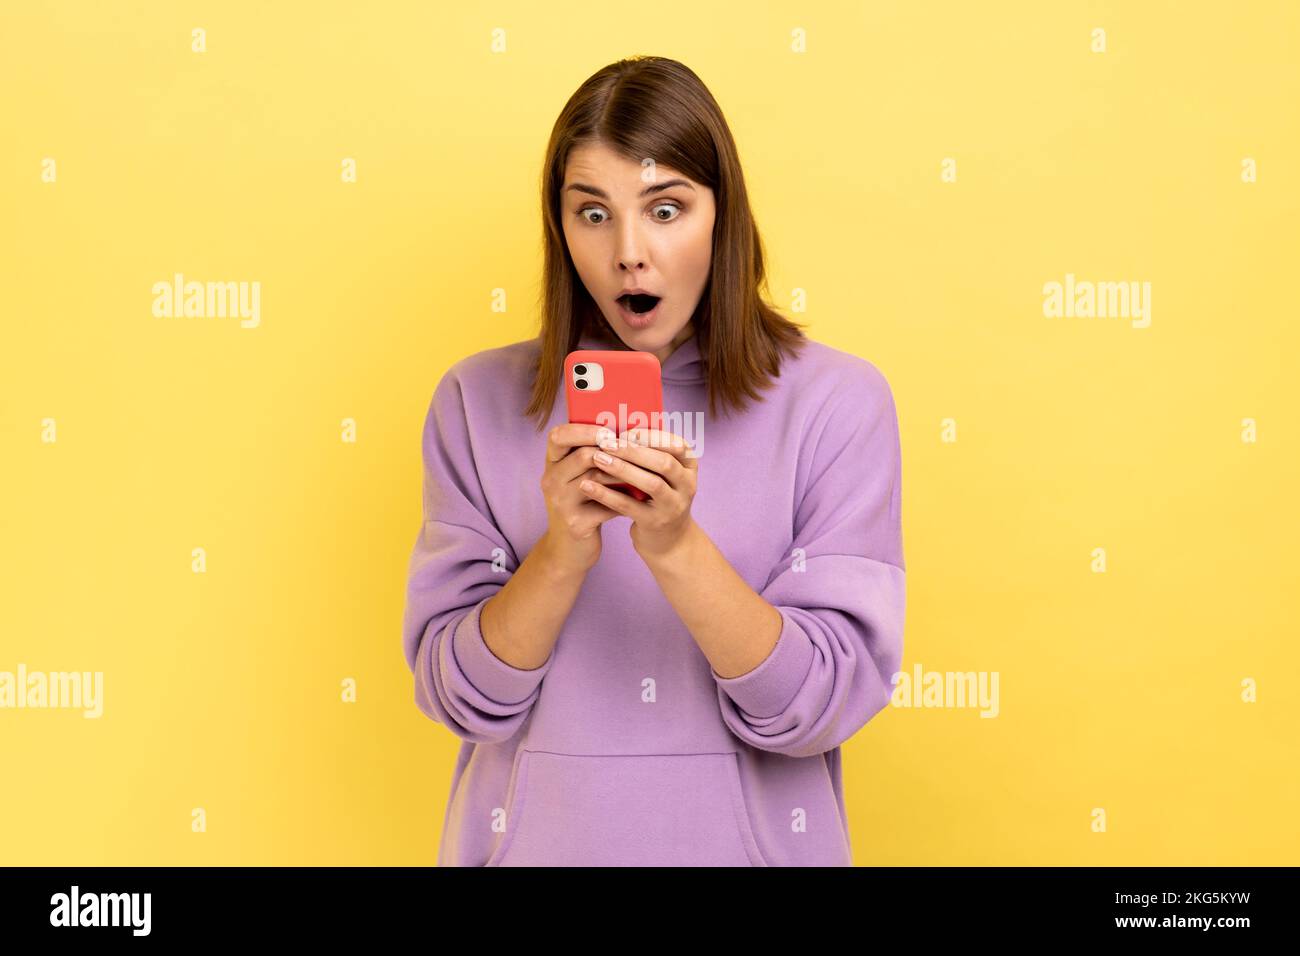 Porträt einer überraschten, aufgeregten Frau, die Nachrichten auf einem Smartphone liest, ein Mobilgerät zur Kommunikation nutzt, von der App überrascht ist und einen lila Hoodie trägt. Innenstudio-Aufnahme isoliert auf gelbem Hintergrund. Stockfoto